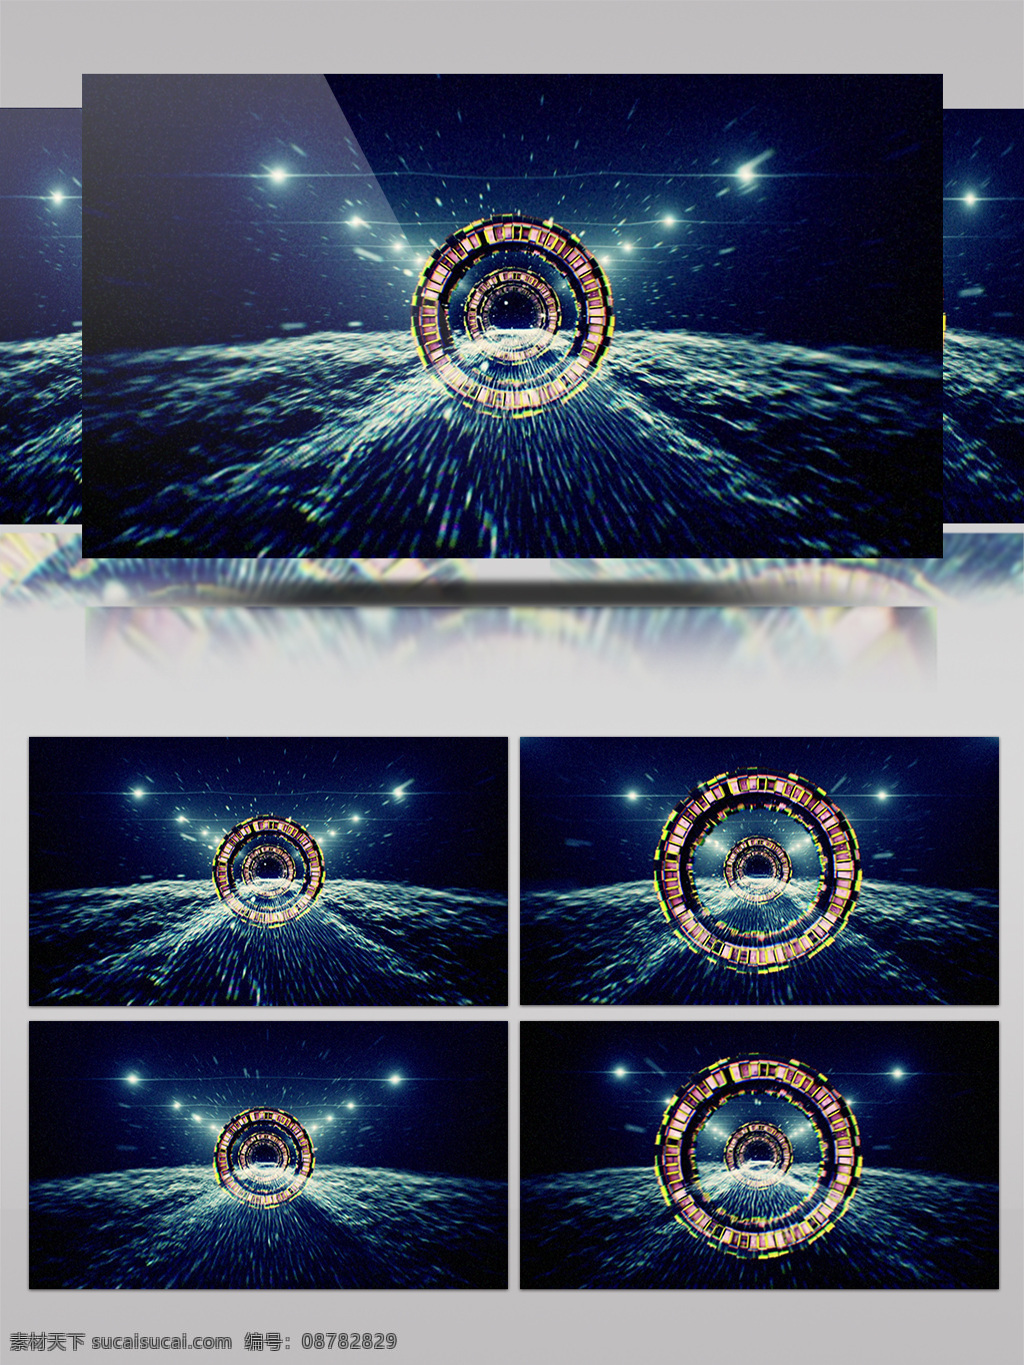 圆环 星河 视频 星河宇宙 黄色圆圈 光斑散射 视觉享受 手机壁纸 电脑屏幕保护 高清视频素材 3d视频素材 特效视频素材